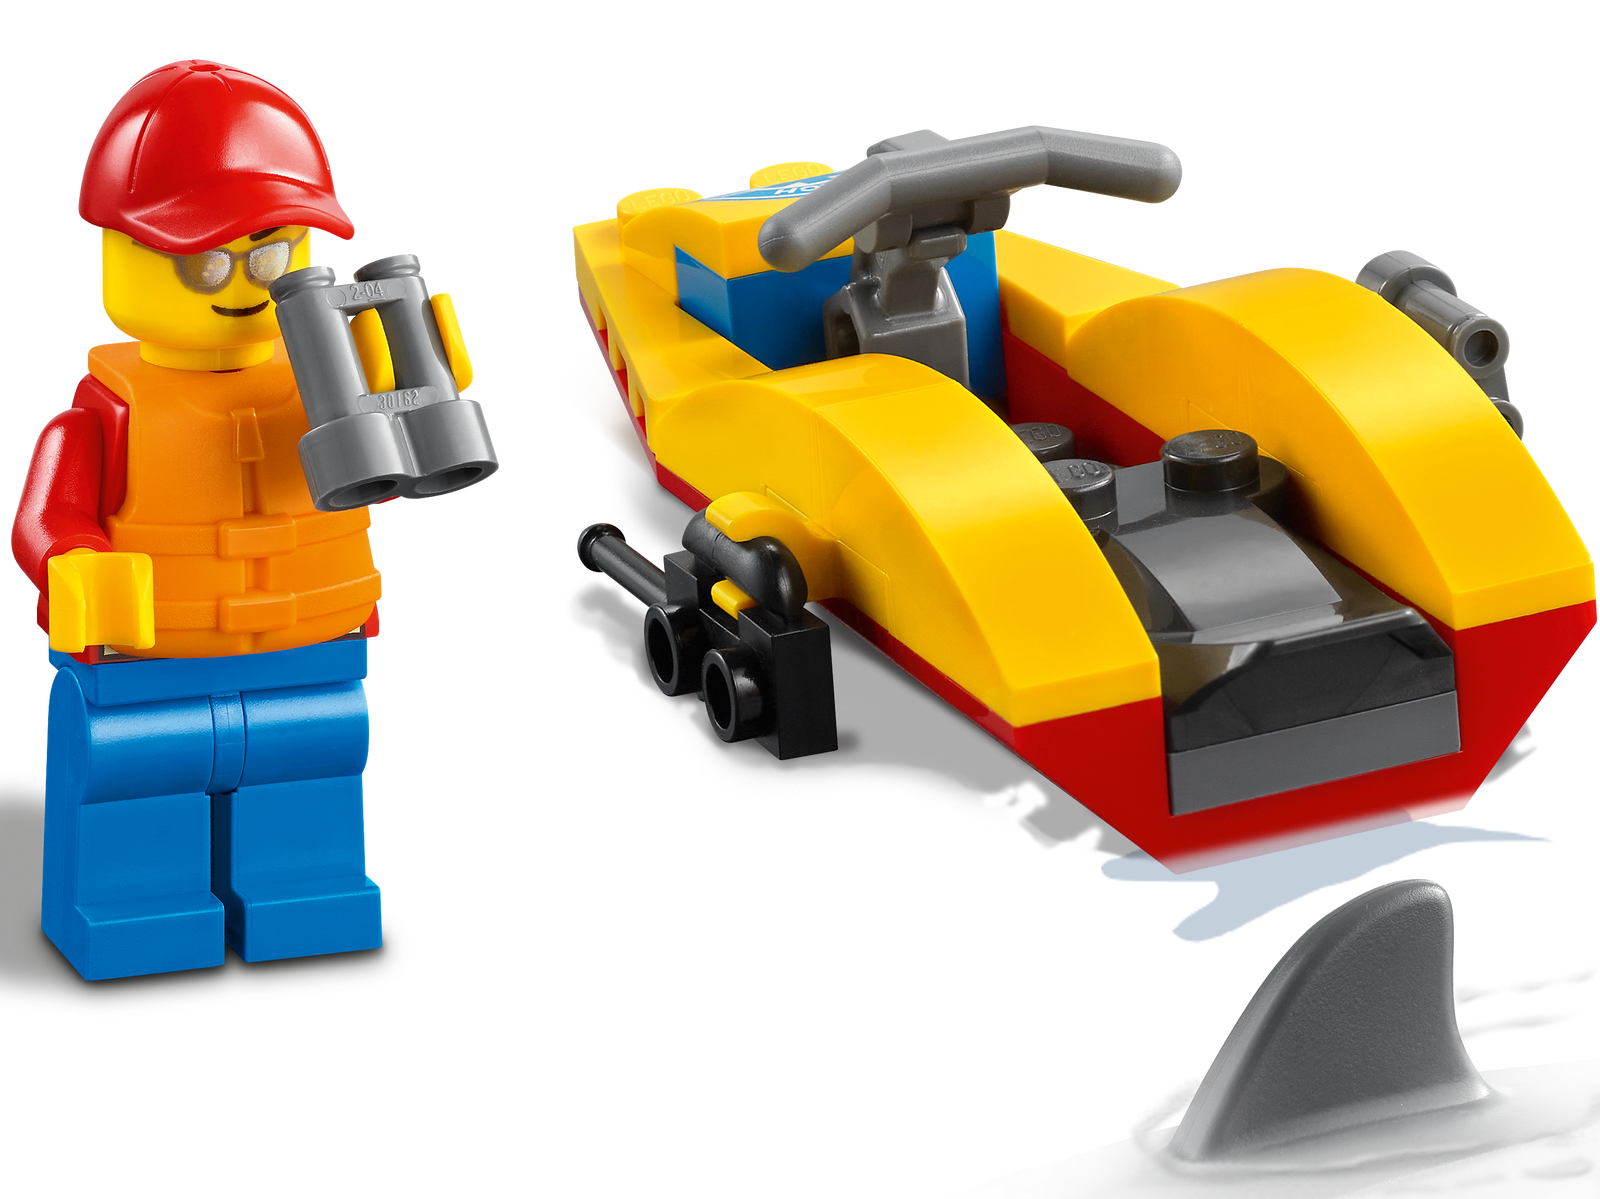 LEGO City Beach Rescue ATV 60286